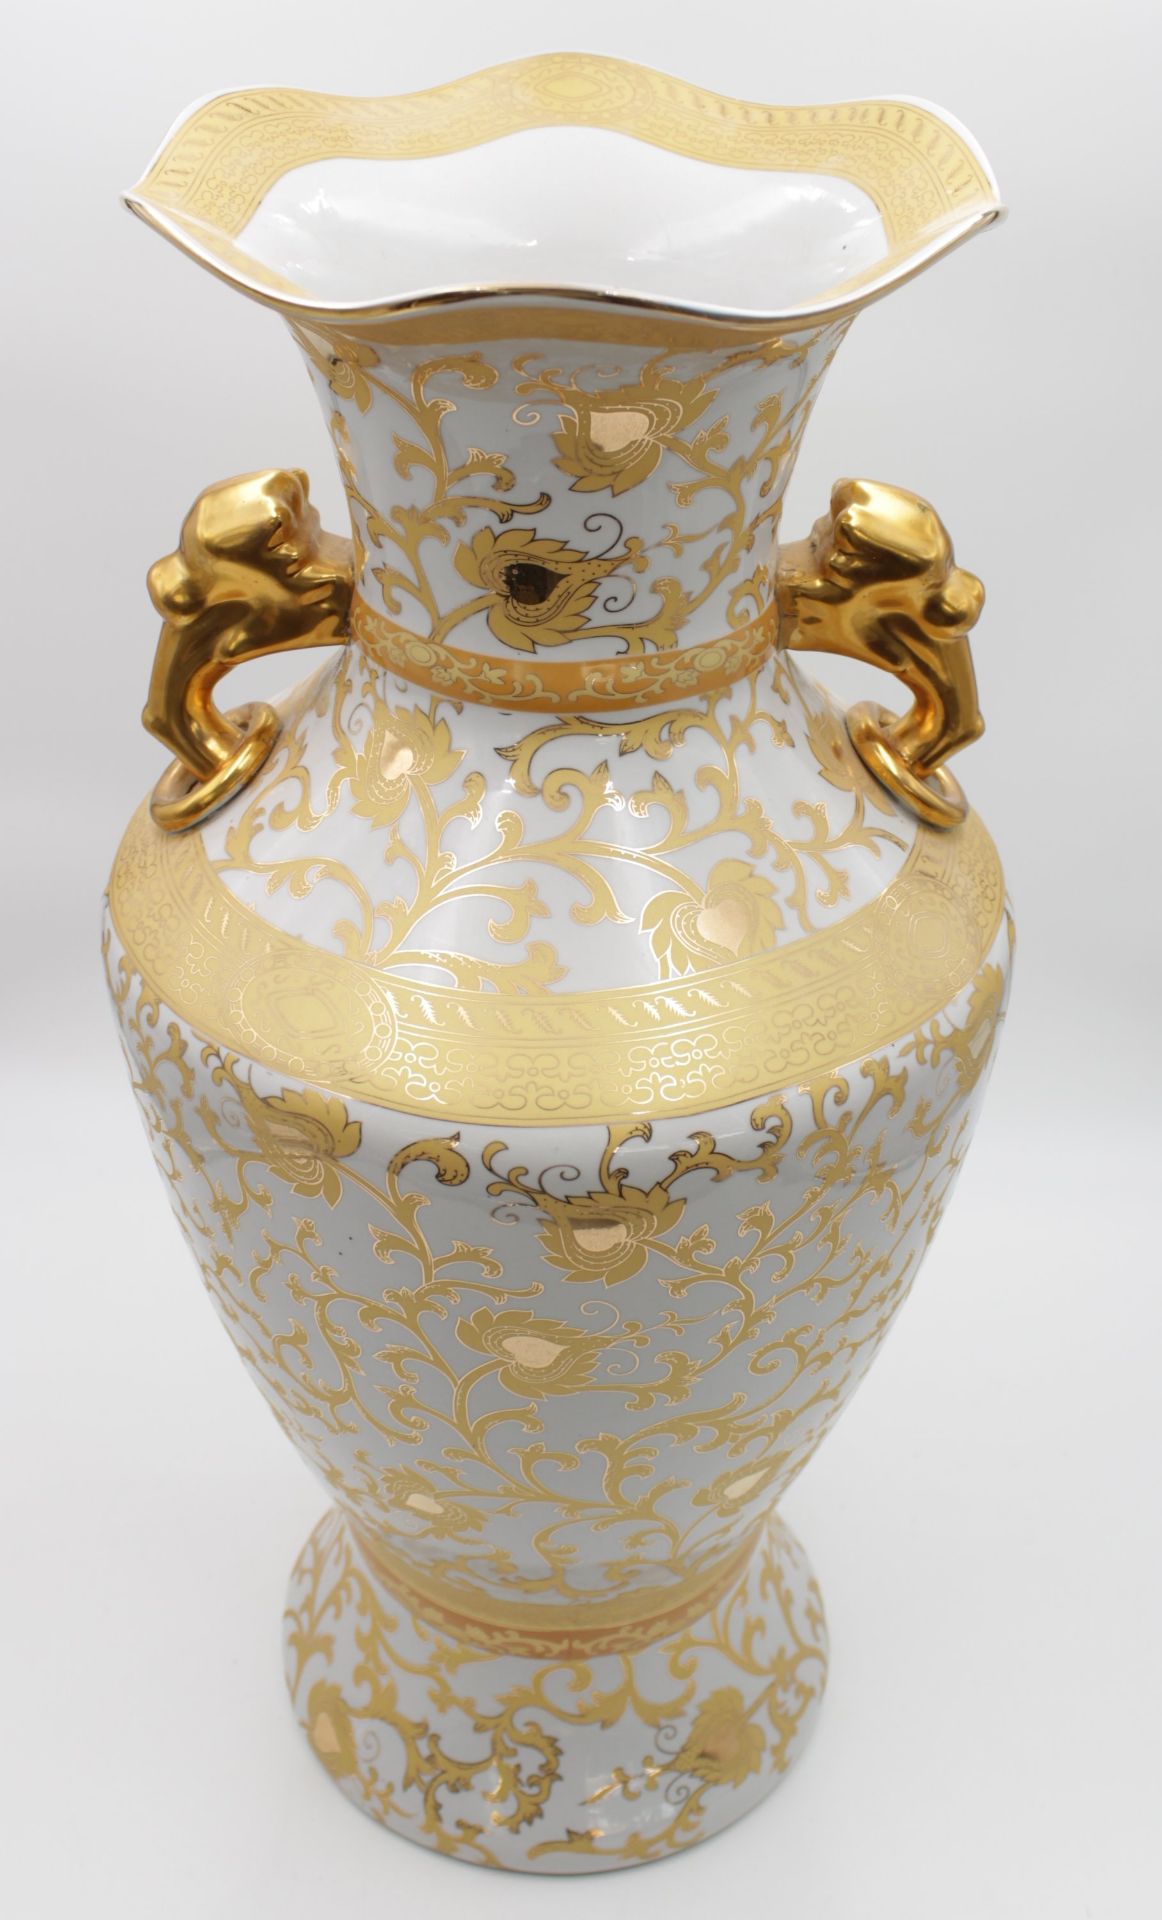 Bodenvase, aufwendiges Golddekor, gemarkt "Crown", H-60cm. - Bild 2 aus 6